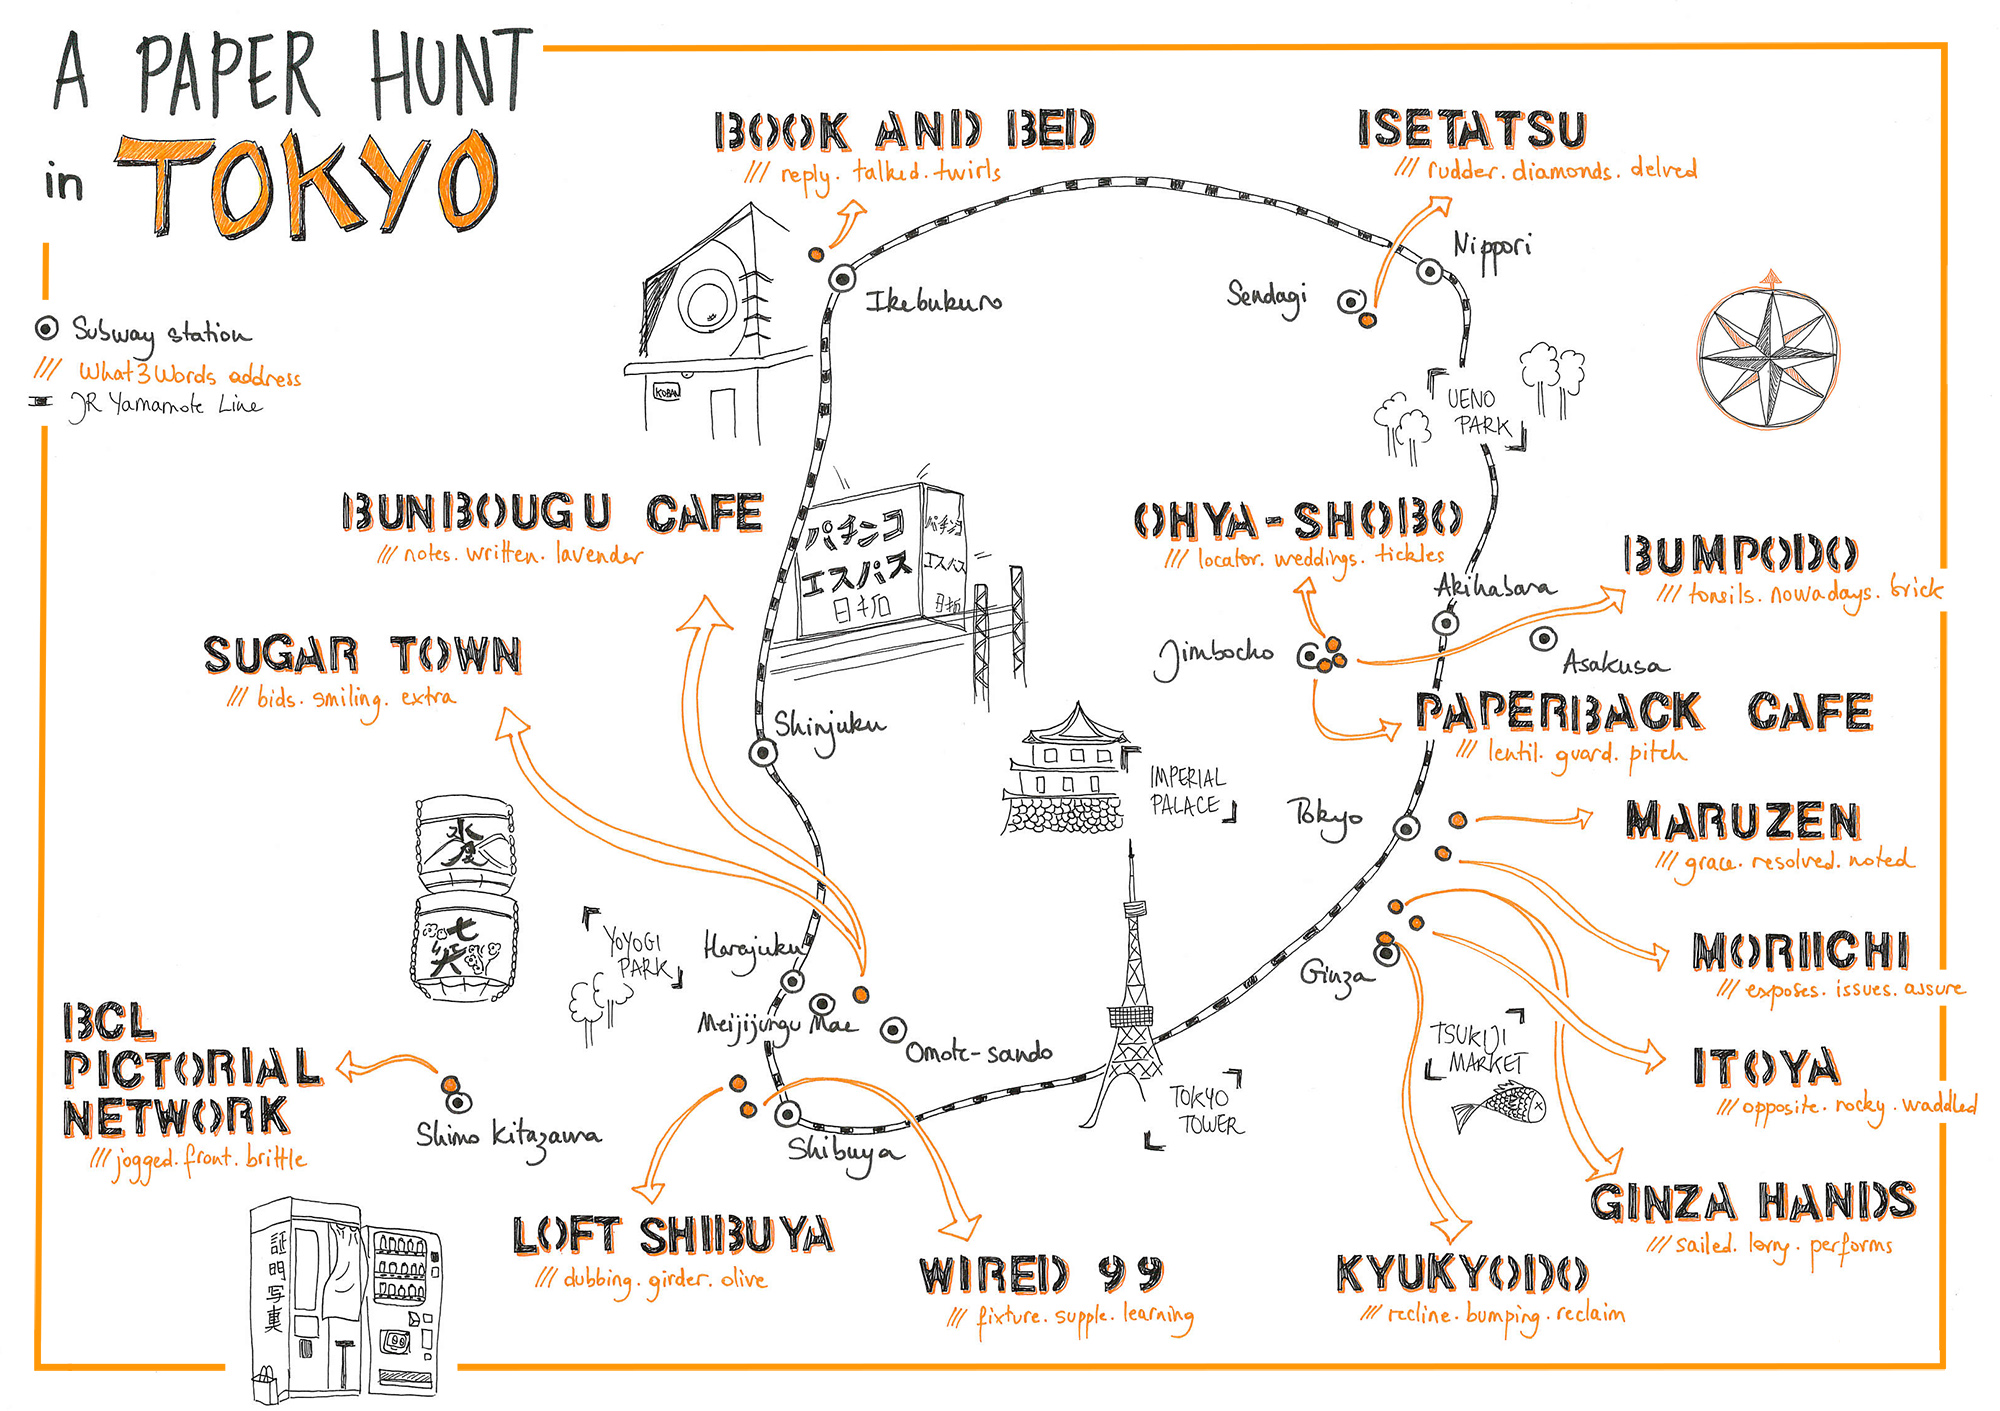 A Paper Hunt in Tokyo